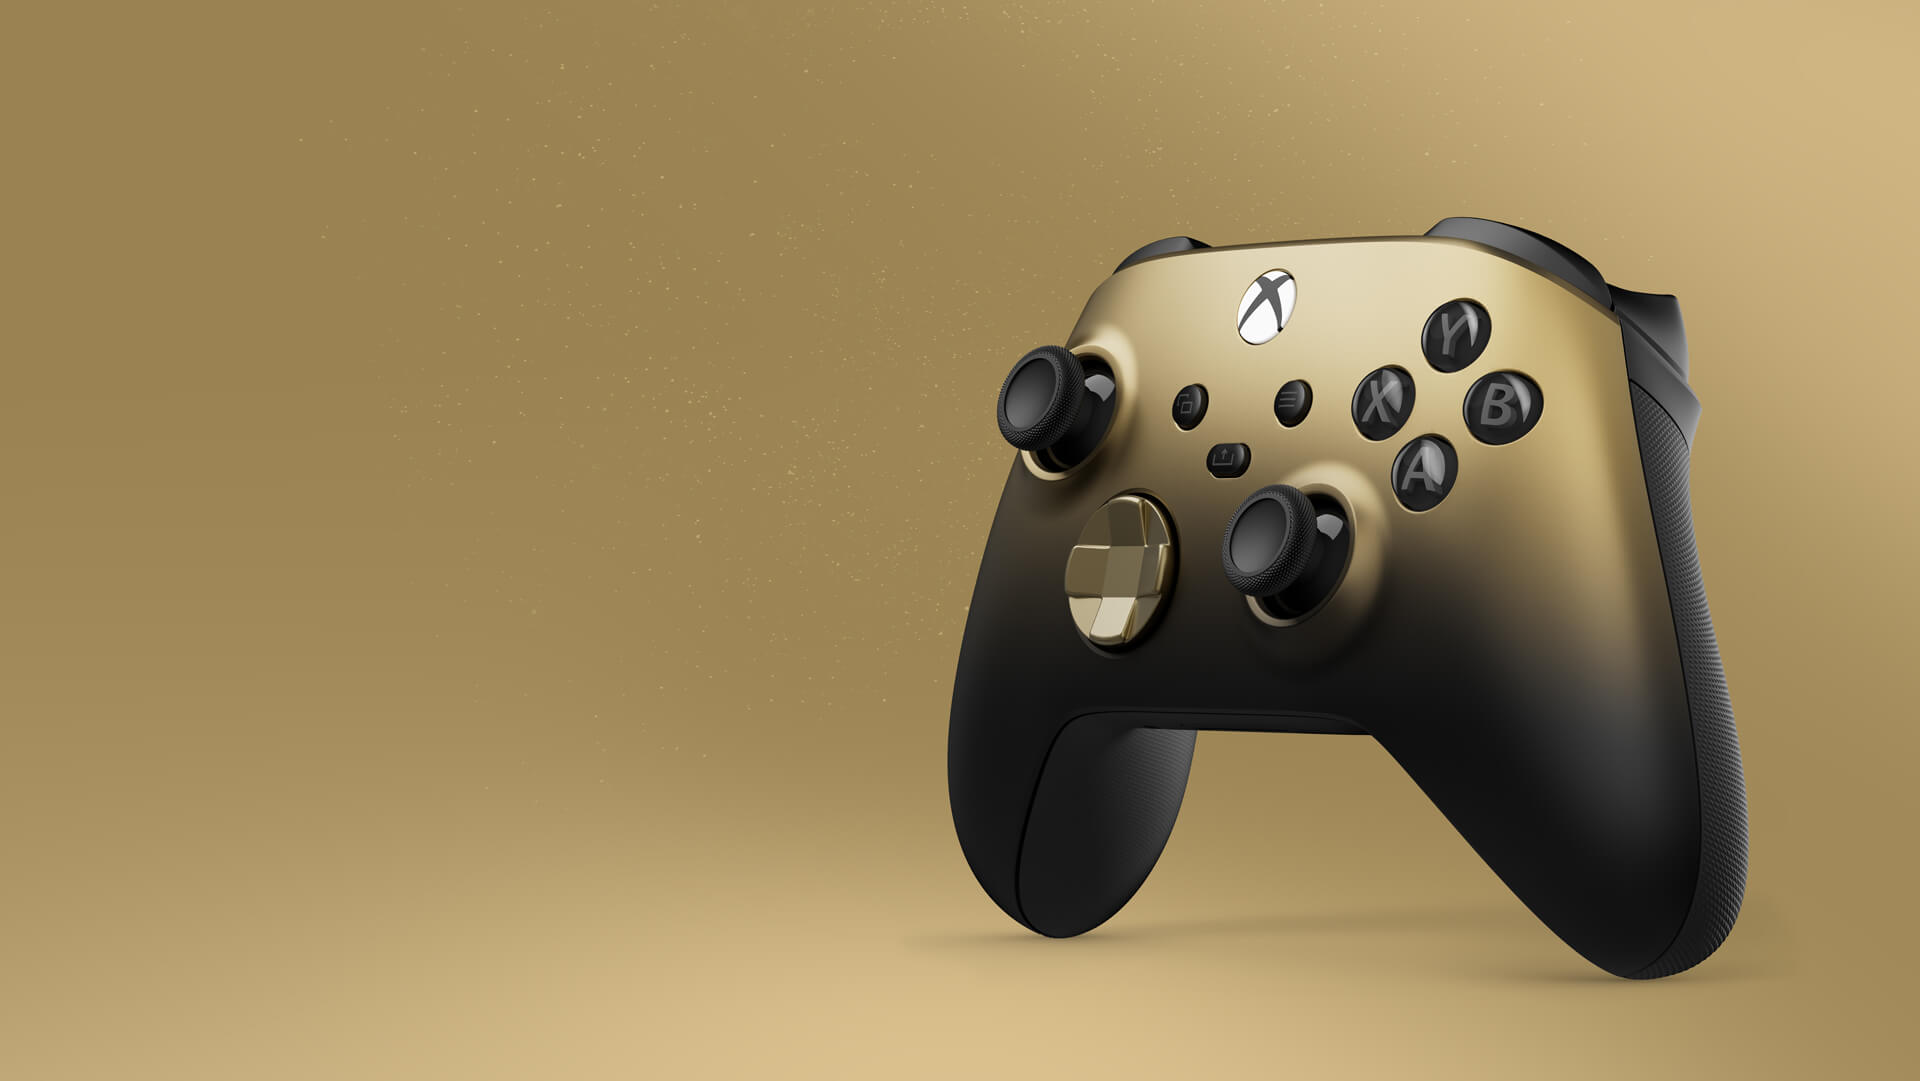 Xbox】ワイヤレスコントローラーに新色「ゴールドシャドウ」登場! 本日より予約開始!【PC】 | AppBank